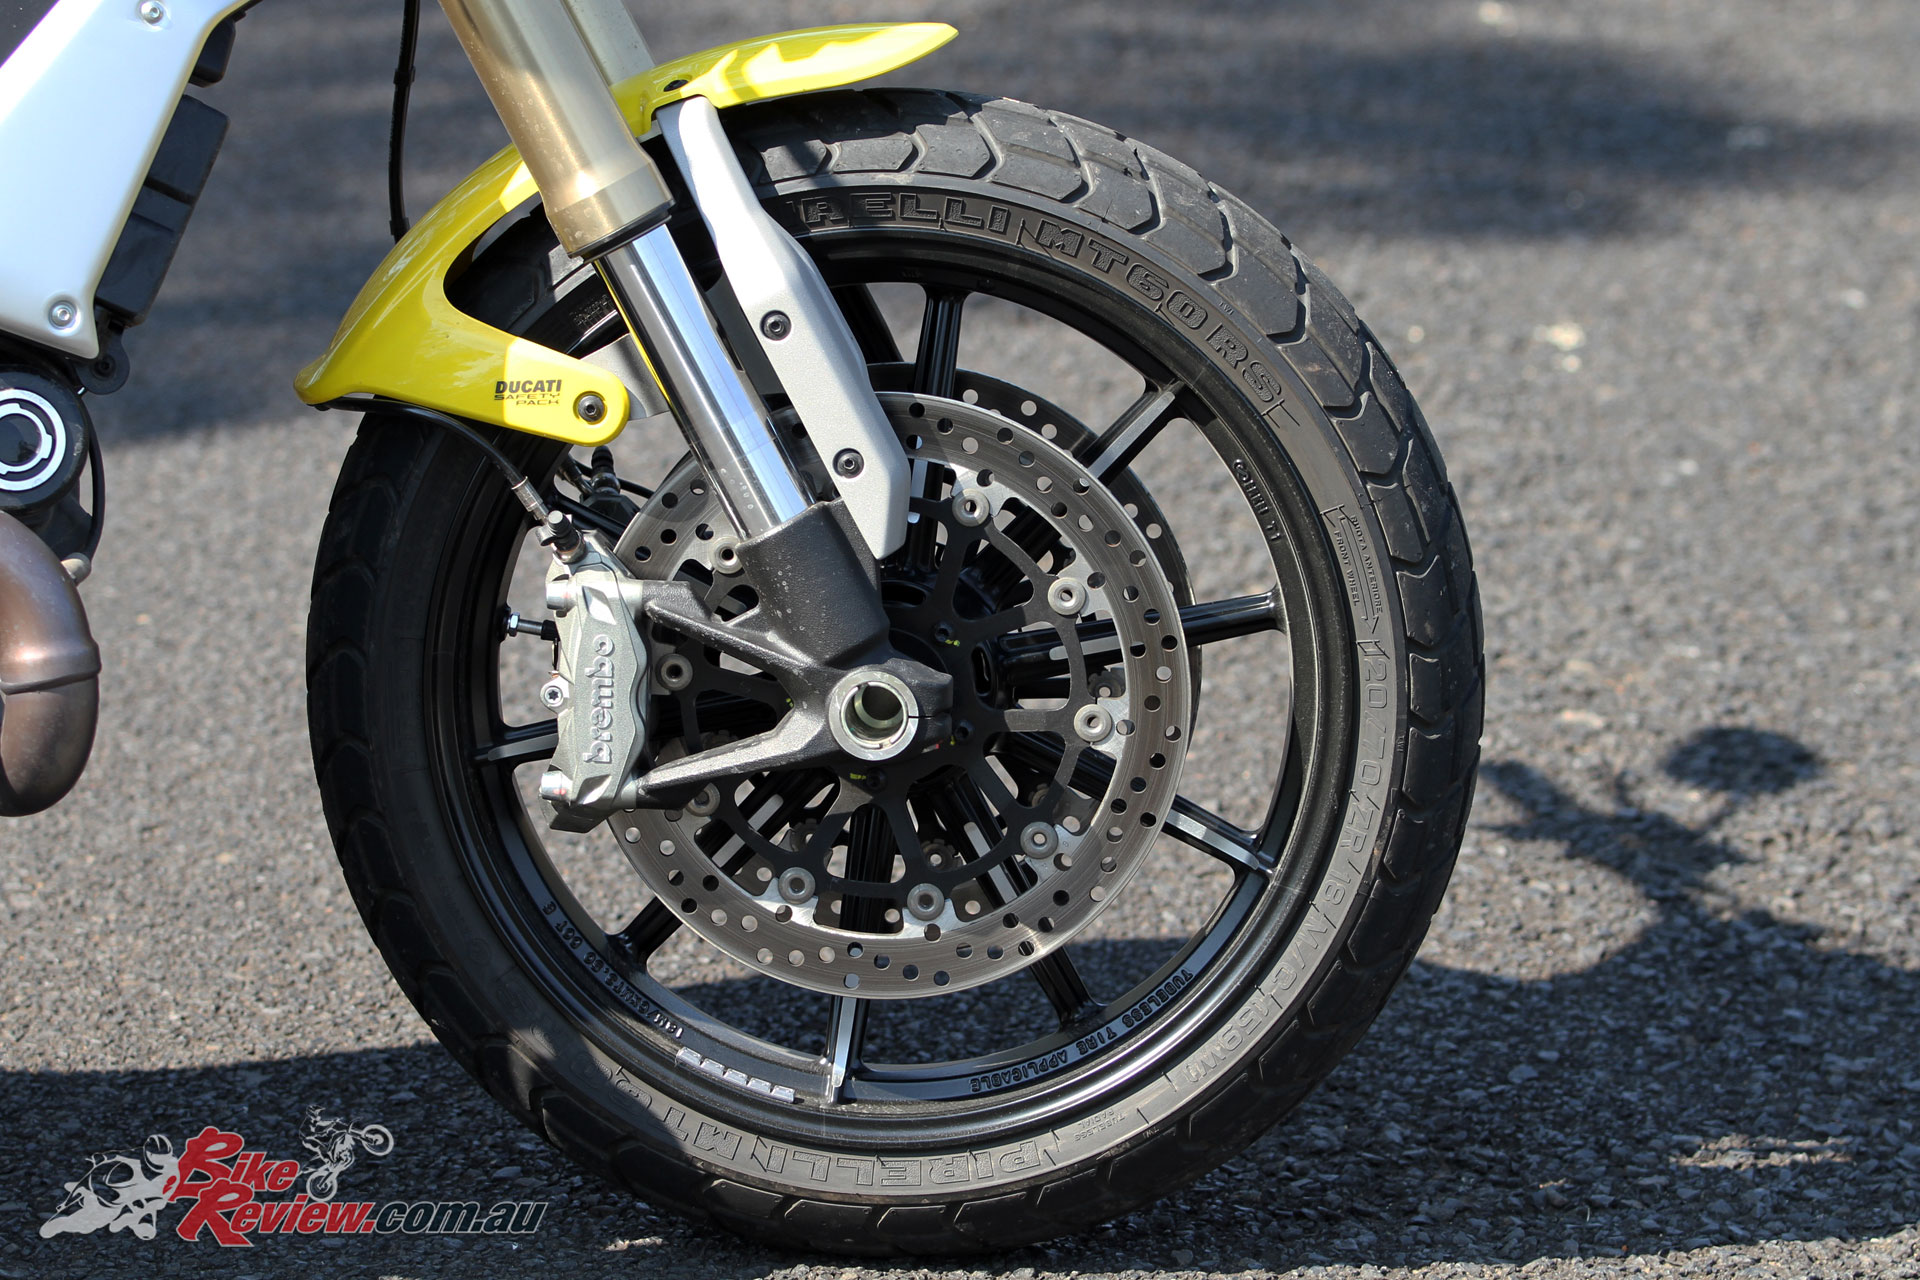 2018-Ducati-Scrambler-1100-Bike-Review-9492